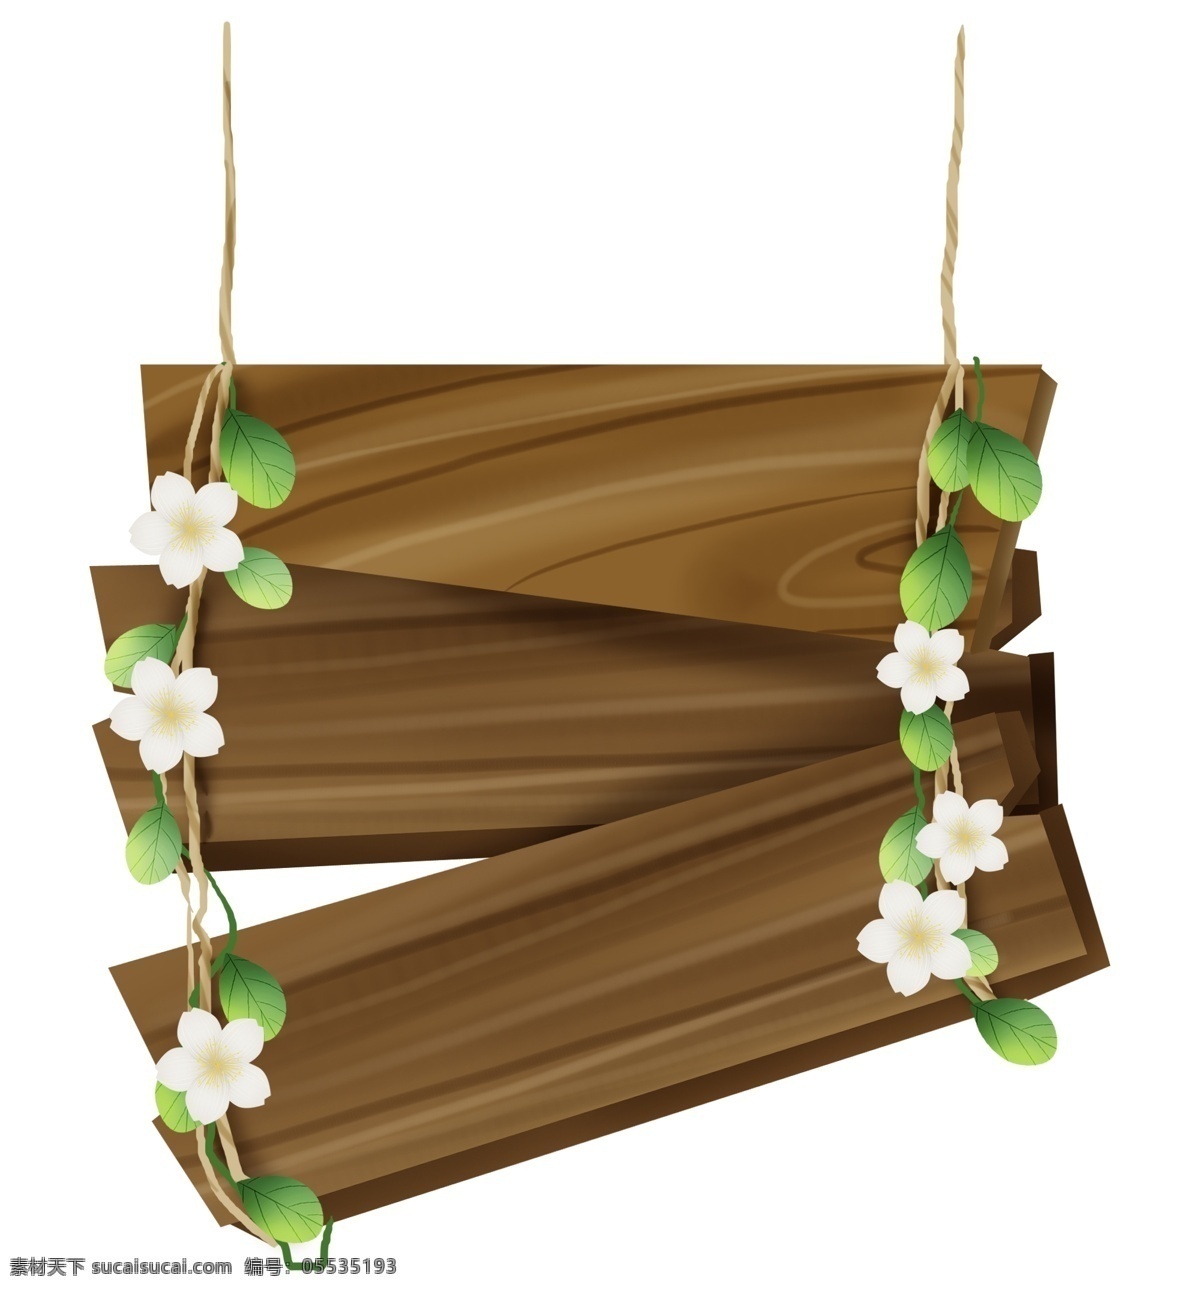 木板 标题 框 花 藤 夏天 植物 提示 文字 春天 白色花朵